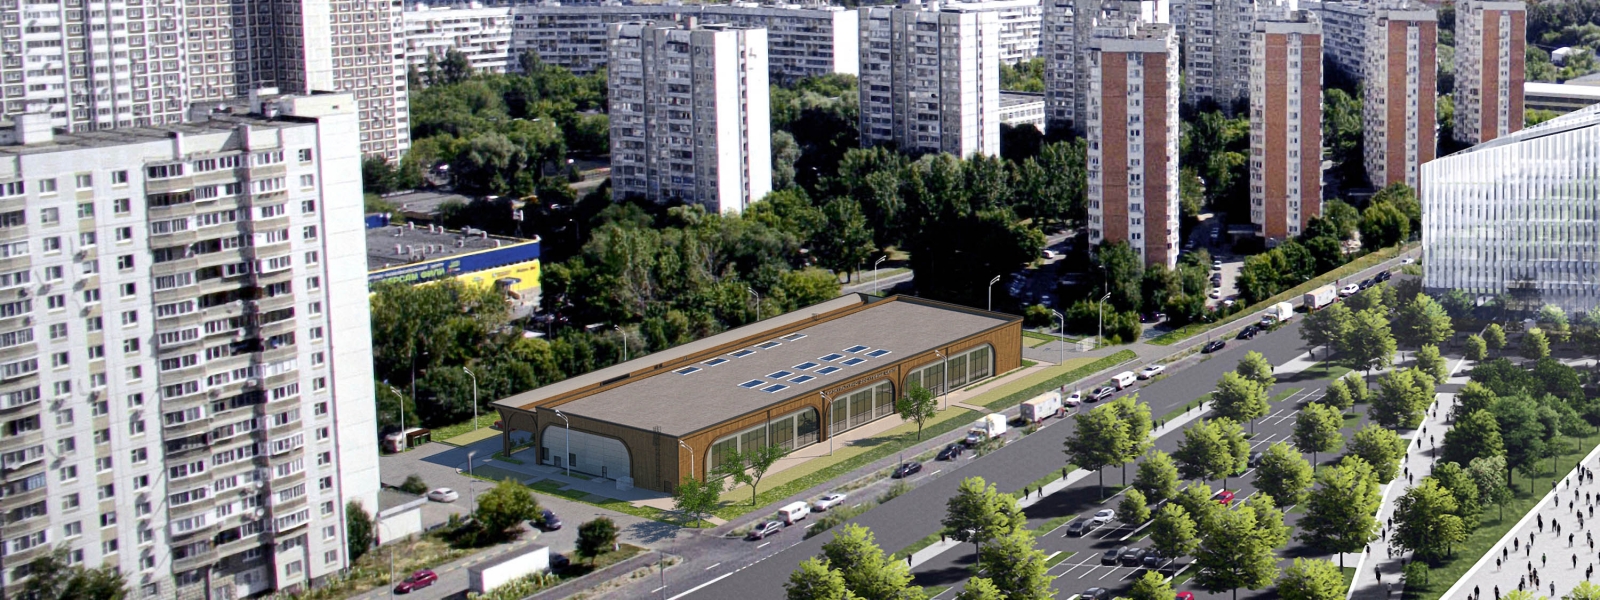 work-Современный энергоэффективный объект для размещения спортивно-развлекательного комплекса, расположенный в московском городском районе Фили